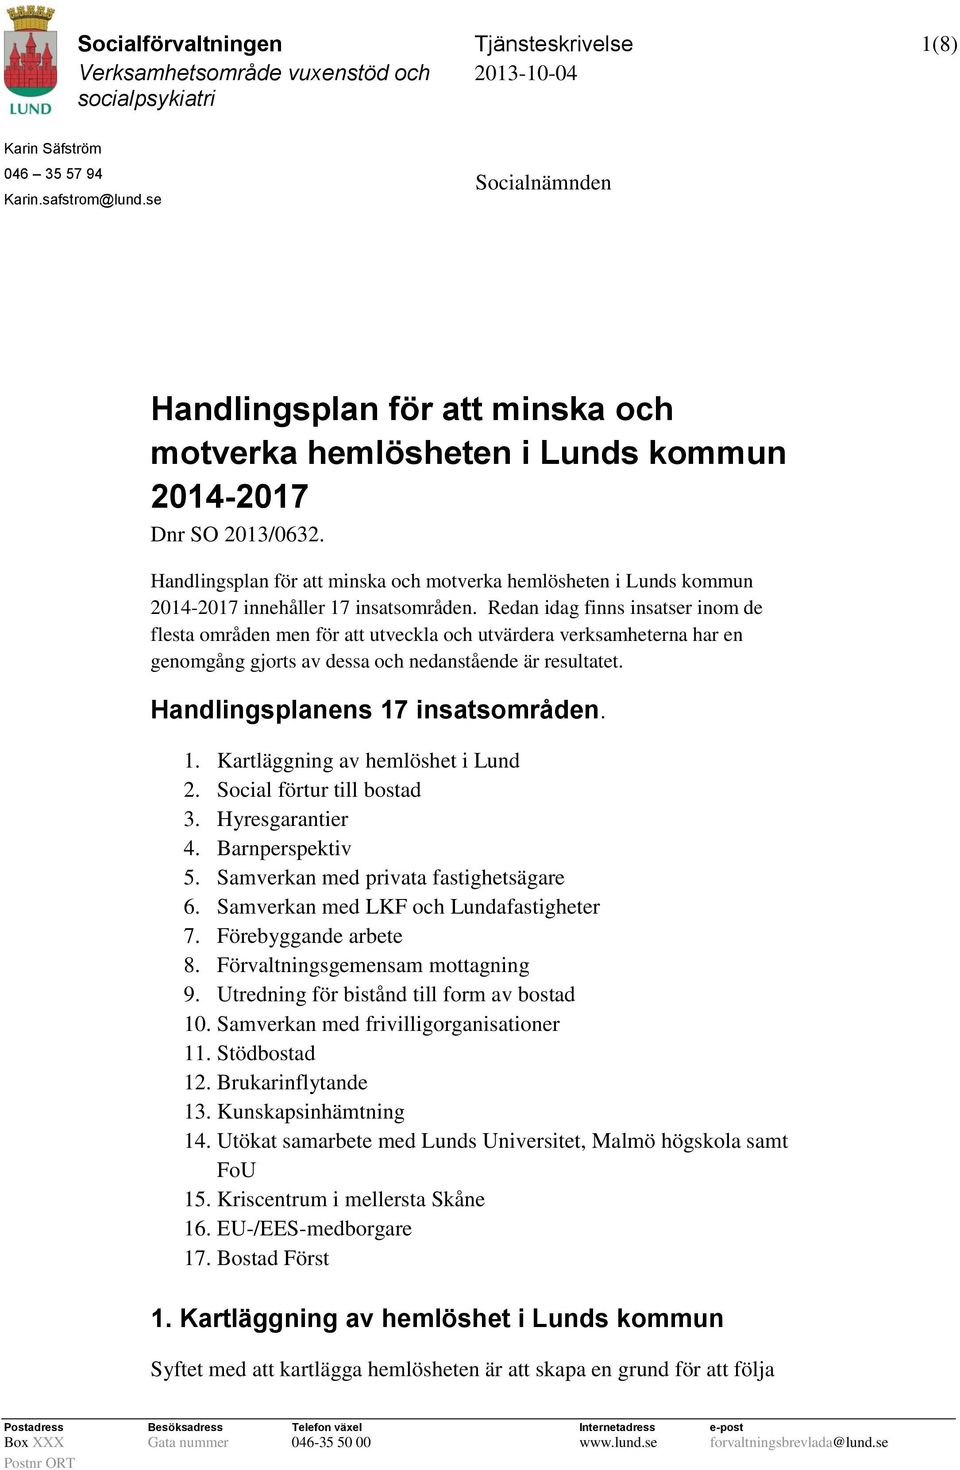 Handlingsplan för att minska och motverka hemlösheten i Lunds kommun 2014-2017 innehåller 17 insatsområden.